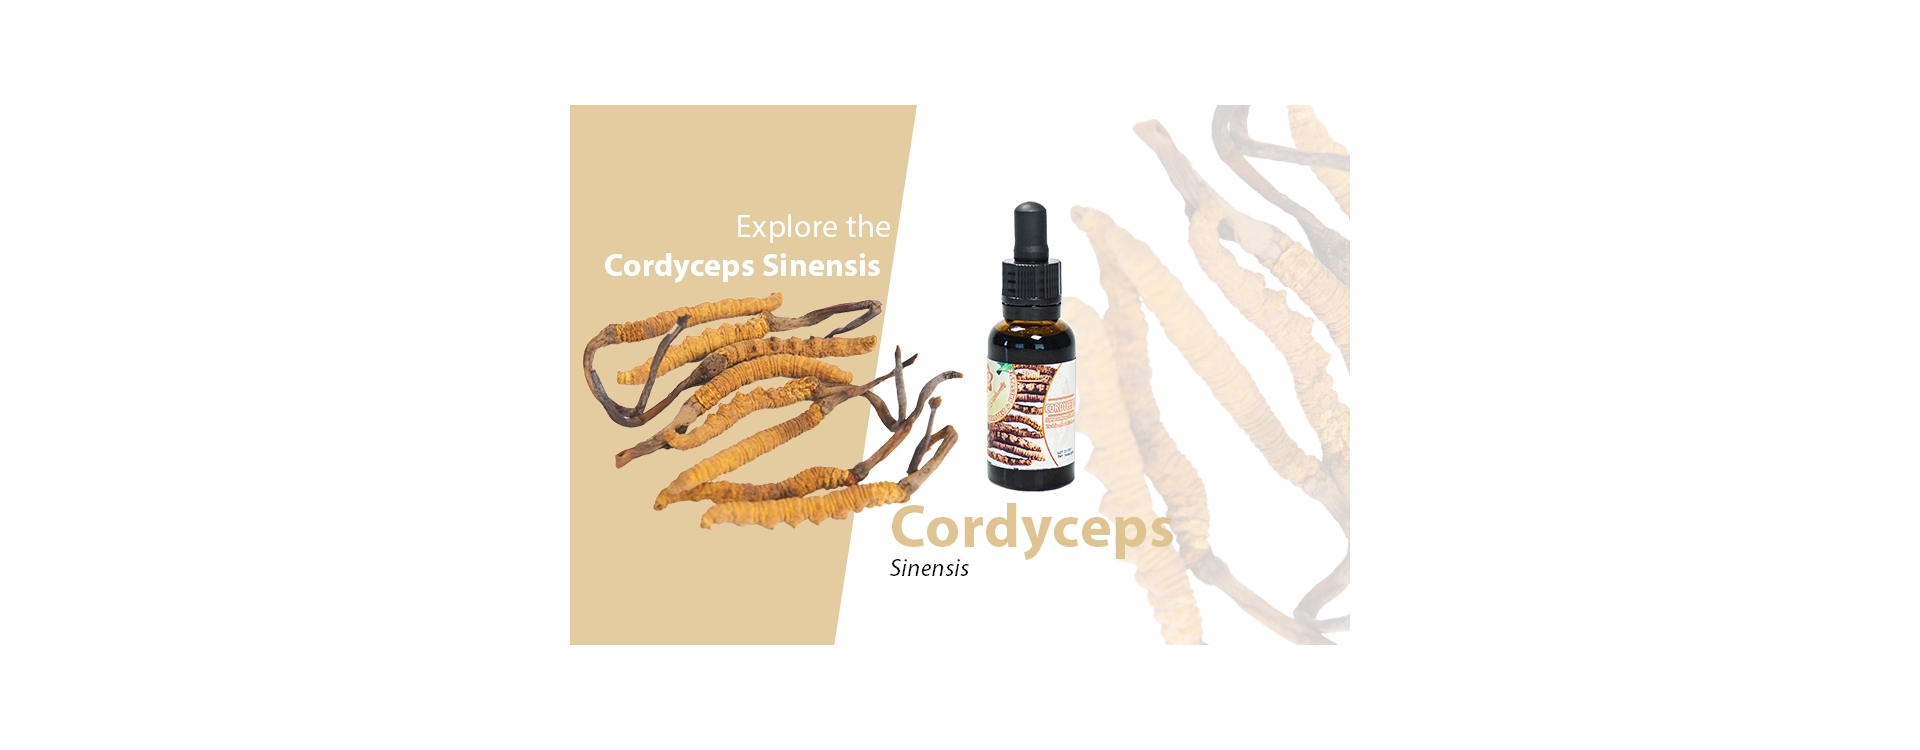 Cordyceps Pilz - Entdecken Sie die gesundheitlichen Vorteile und kaufen Sie Cordyceps online